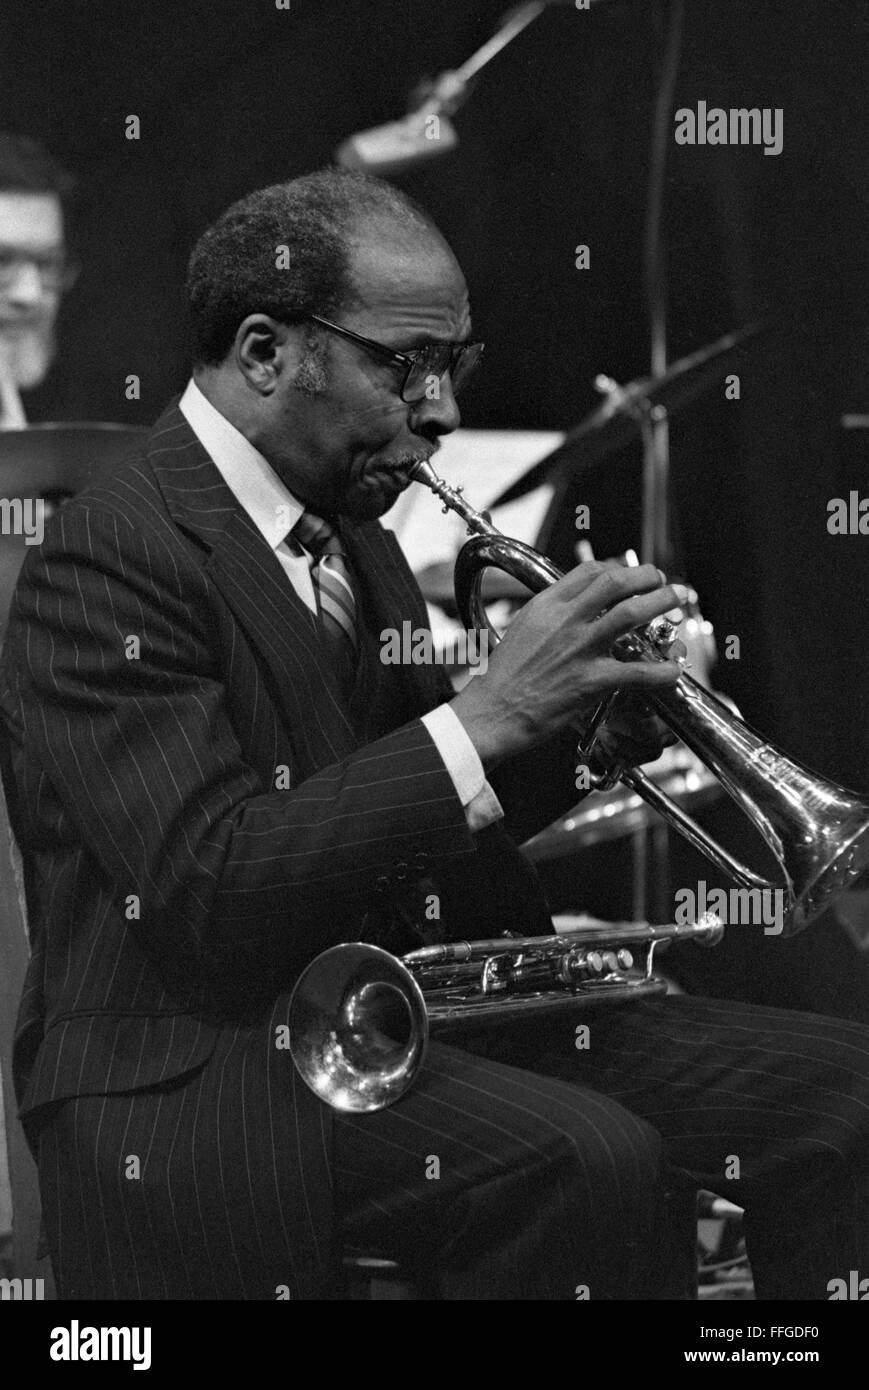 Joe Wilder, musicista jazz, in occasione di una sessione disposti da Loren Schoenberg nella città di New York. Il concerto è stato il 20 gennaio 1985, presso il Teatro del vigneto in Manhattan. Foto Stock